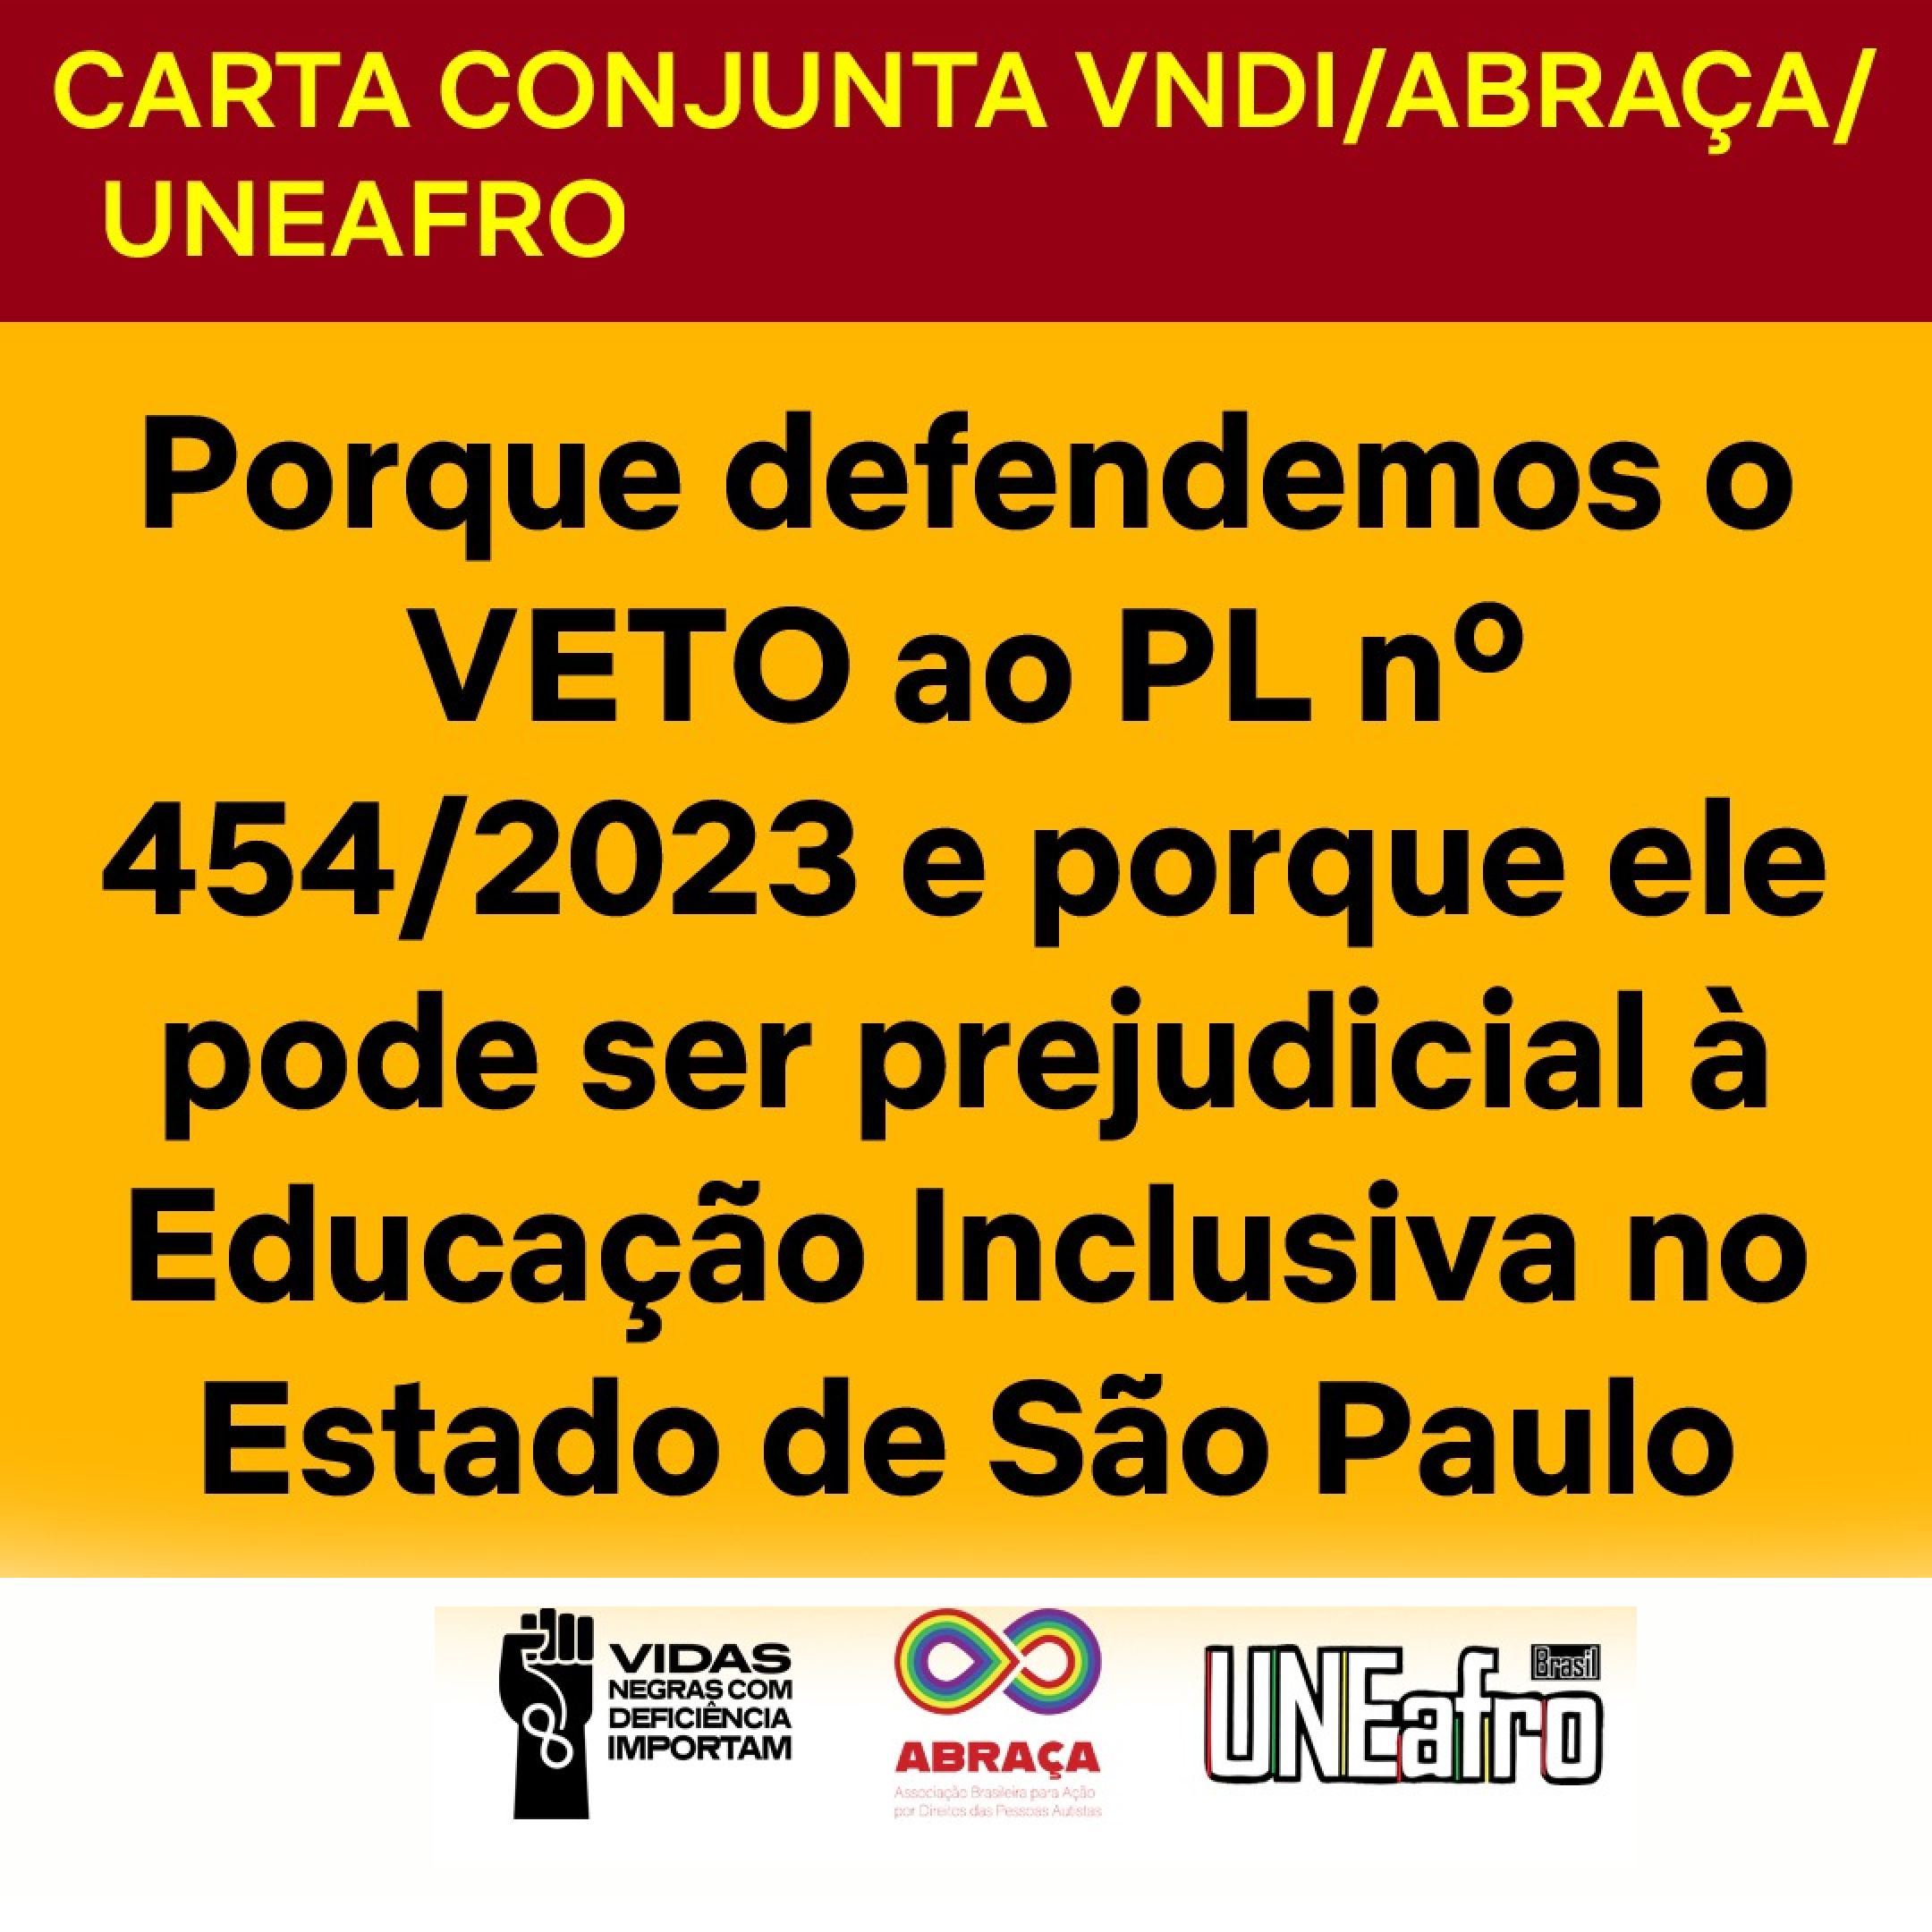 Descrição: Card com fundo amarelo-mostarda. Na parte superior, em um bloco vermelho-escuro, em caixa alta, lê-se "CARTA CONJUNTA VNDI/ABRAÇA/UNEAFRO". Abaixo, lê-se "Porque defendemos o VETO ao PL nº 454/2023 e porque ele pode ser prejudicial à Educação Inclusiva no Estado de São Paulo". No rodapé, em um fundo branco, os logotipos do VNDI, da ABRAÇA, da UNEAFRO..